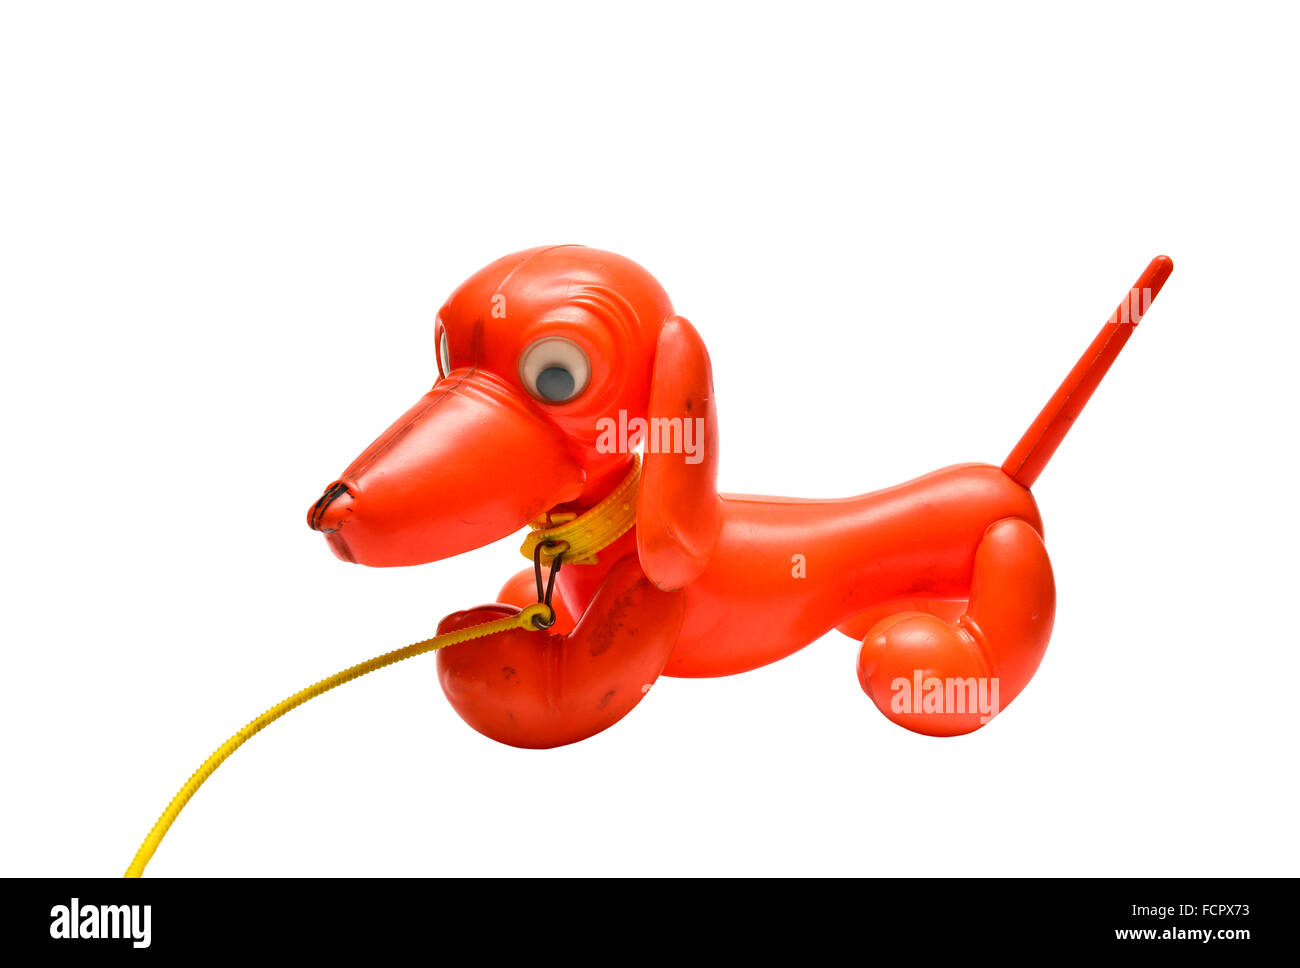 Le chien rouge communiste jouet rétro sur fond blanc Banque D'Images